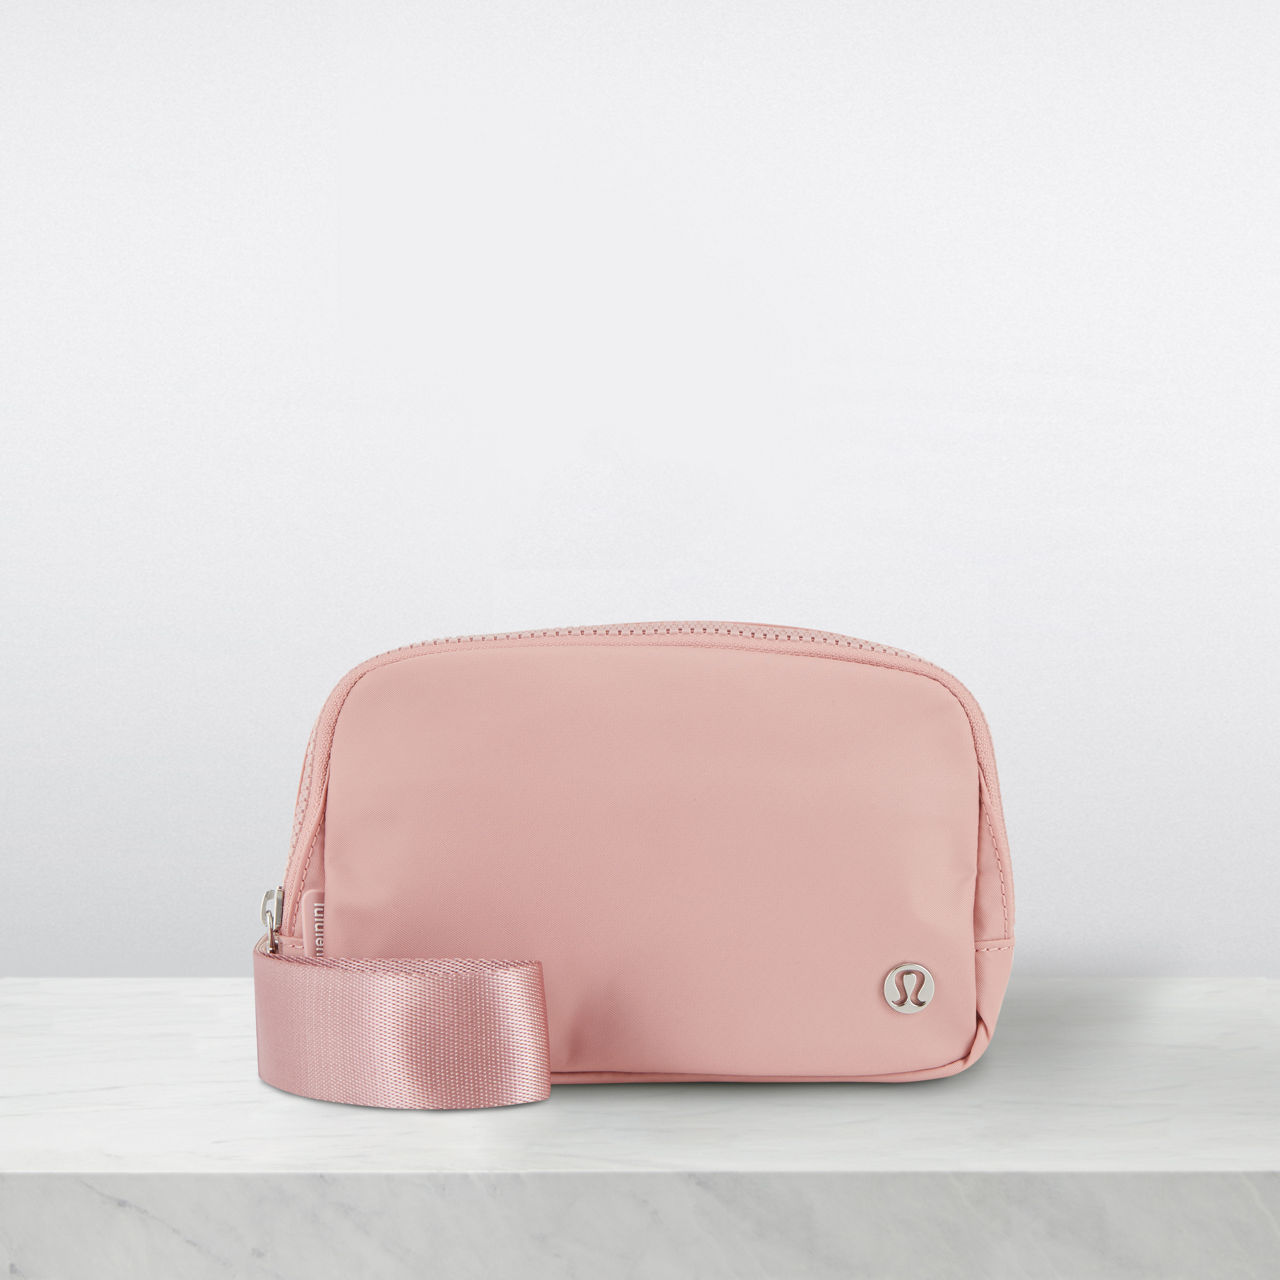 BÉIS 'The Convertible Mini Weekender' in Atlas Pink - Pink Small Weekend  Bag & Travel Bag